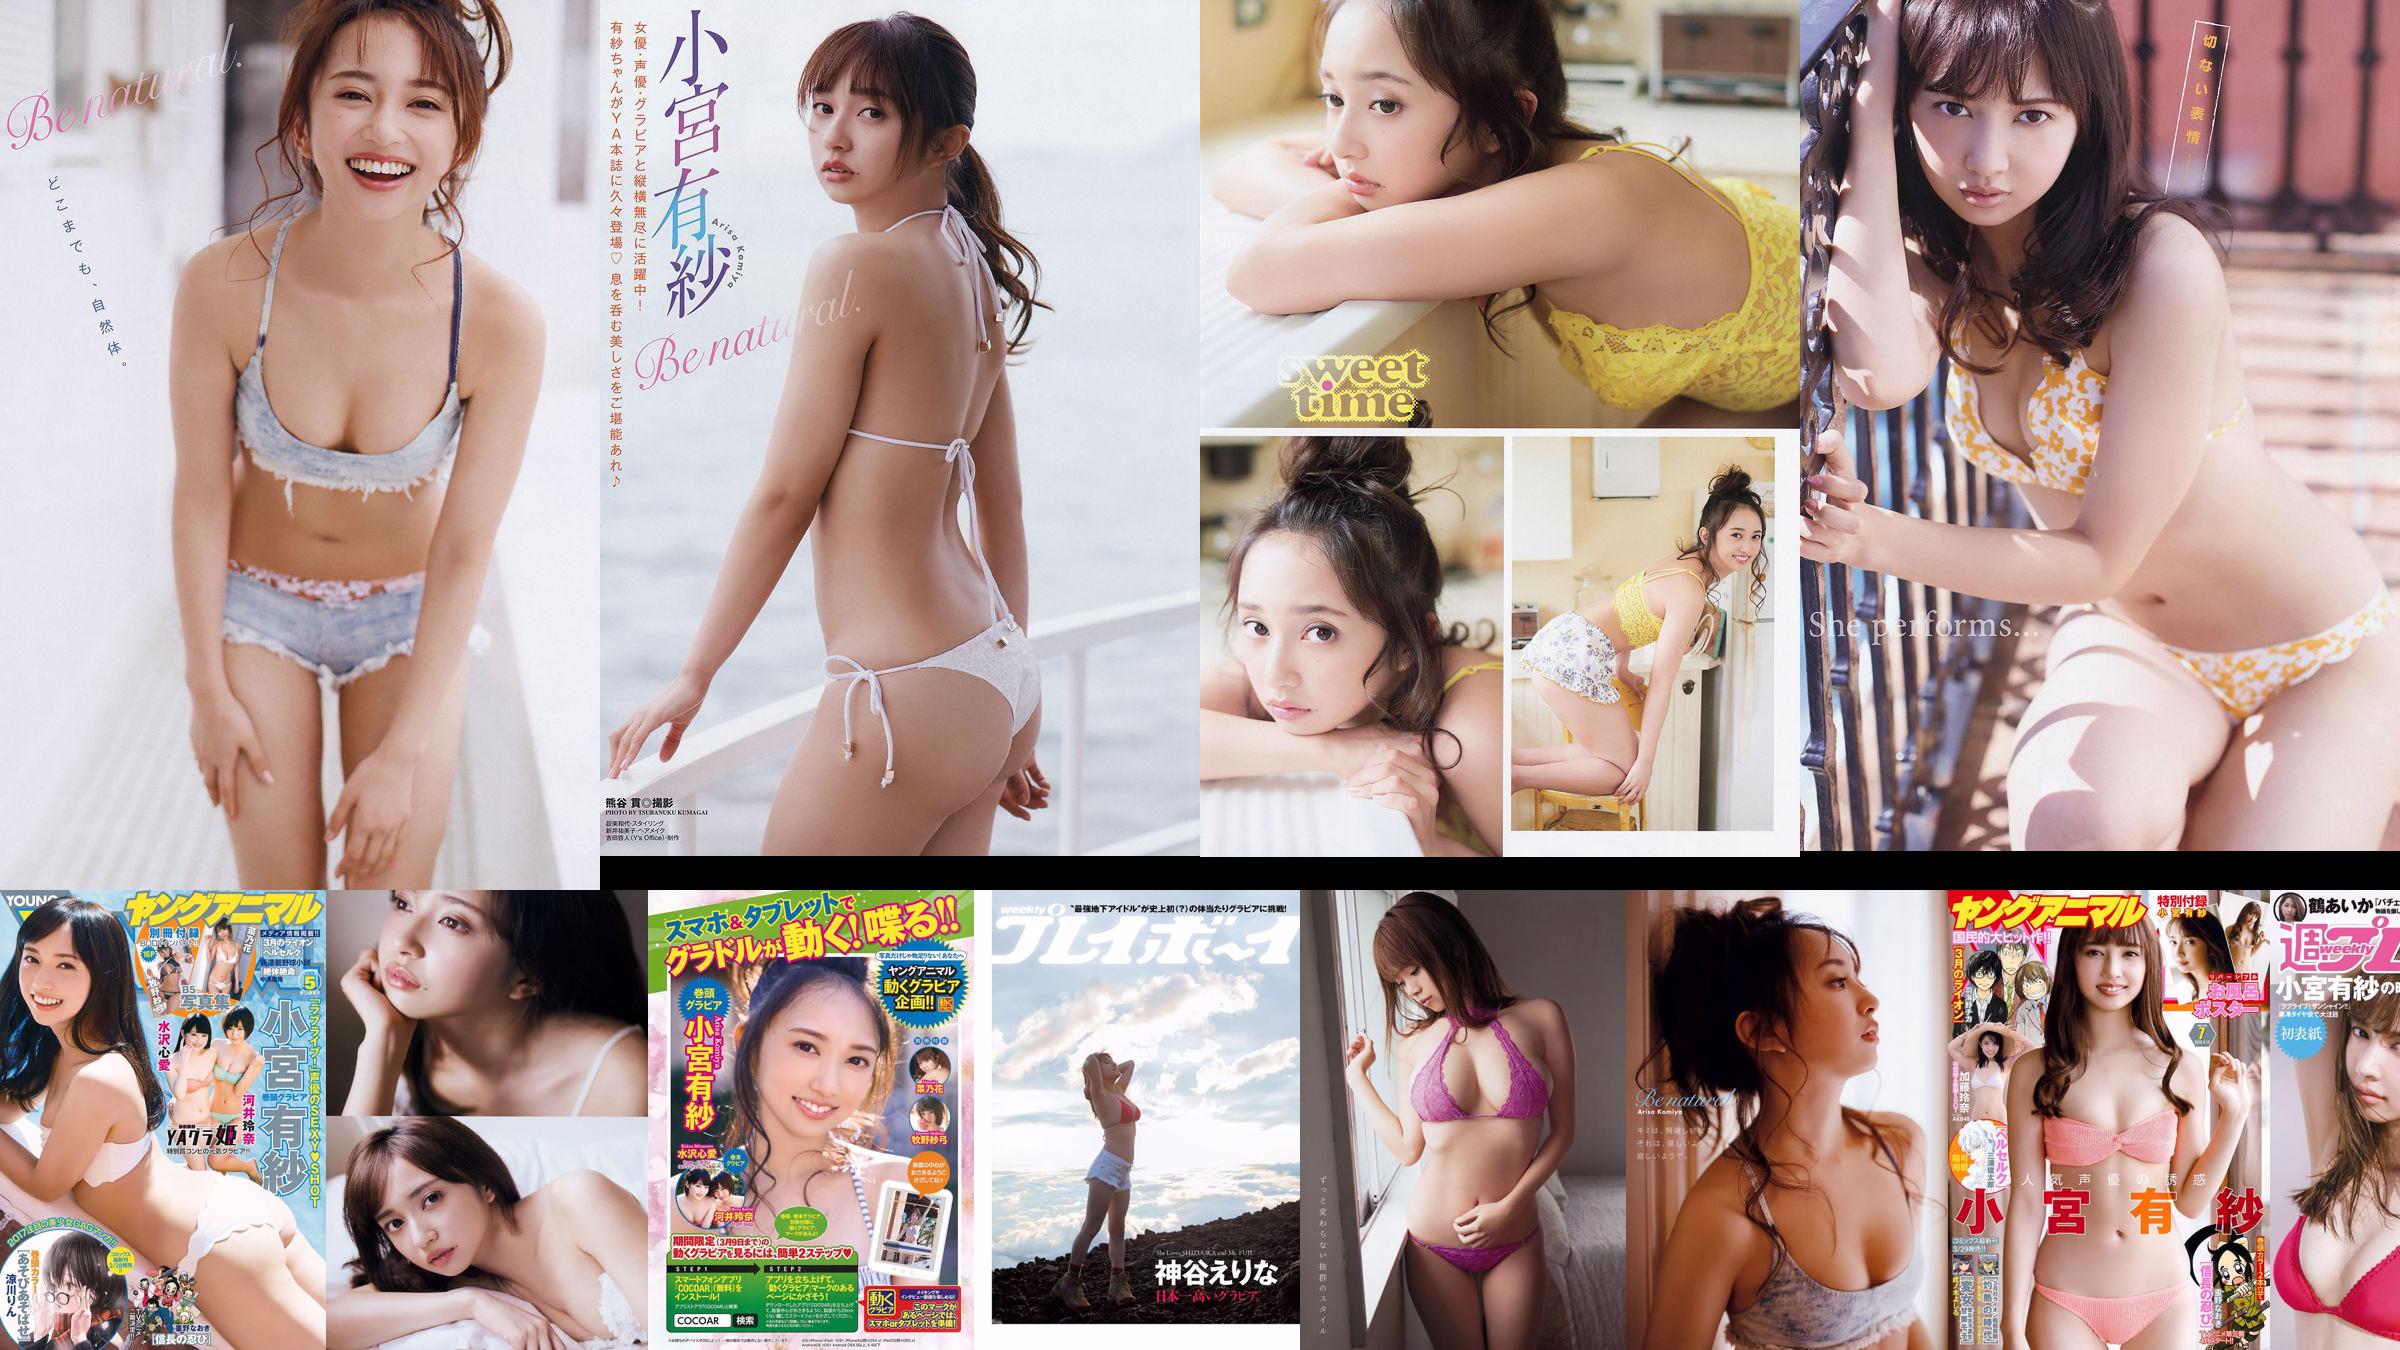 Arisa Komiya Yuna Sekine [Jungtier] 2018 No.20 Photo Magazine No.619f25 Seite 2